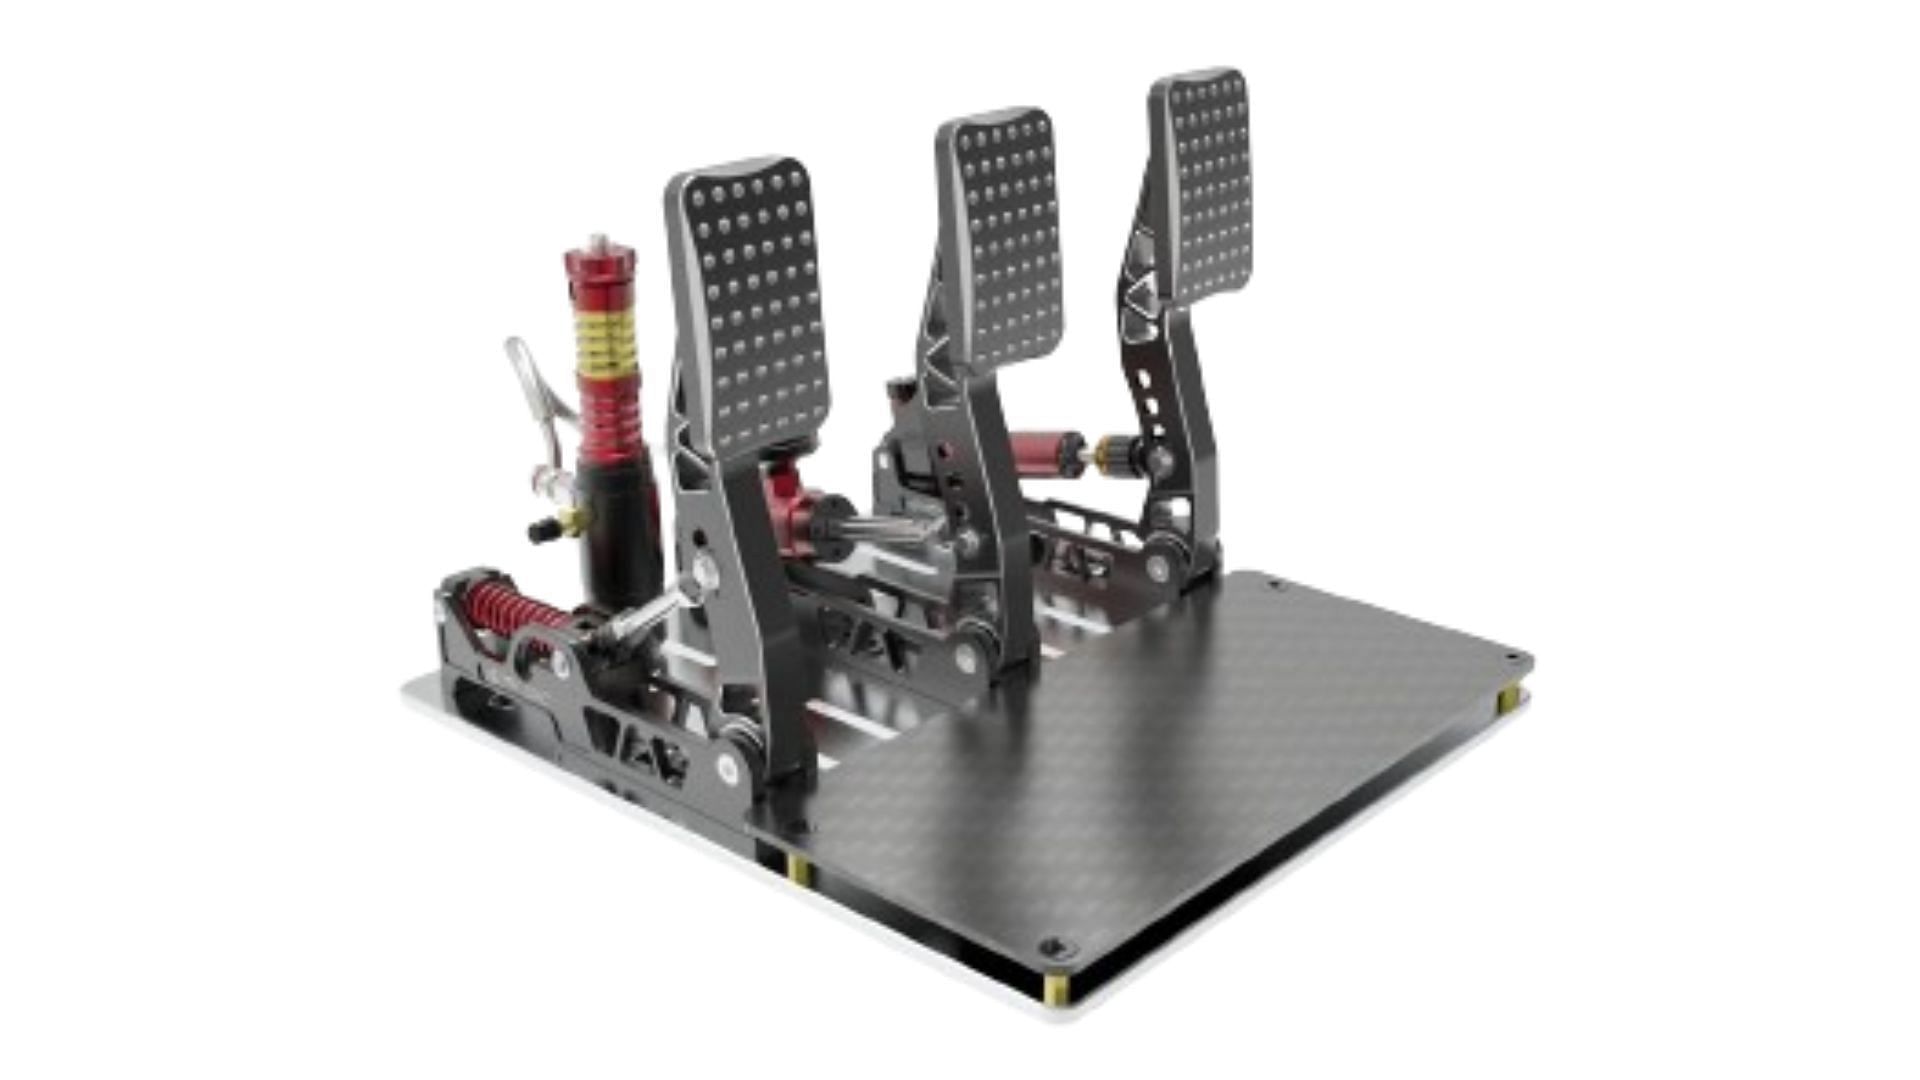 Simagic P2000 - best pedals for sim racing (Image via Simagic)